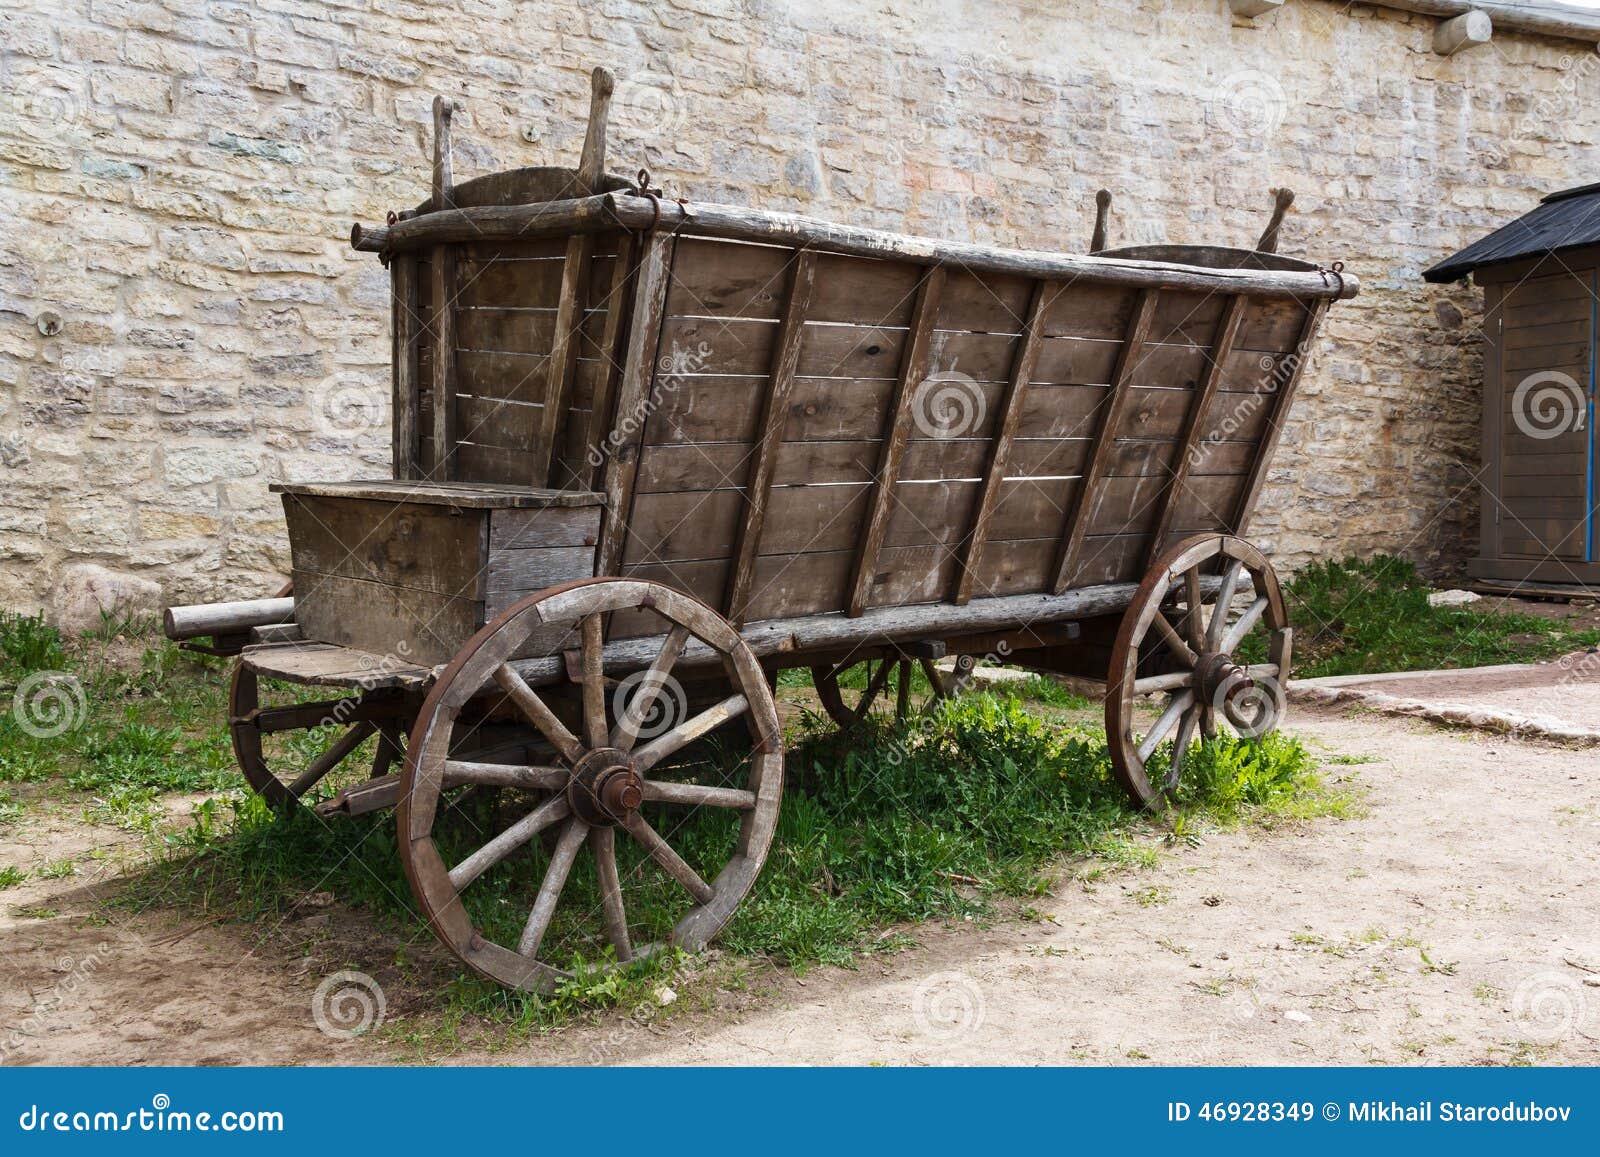 Невдалеке стояла телега. Старая деревянная тележка. Повозка стоячая. Арбат телега исторически. Старая деревянная телега в грязи.